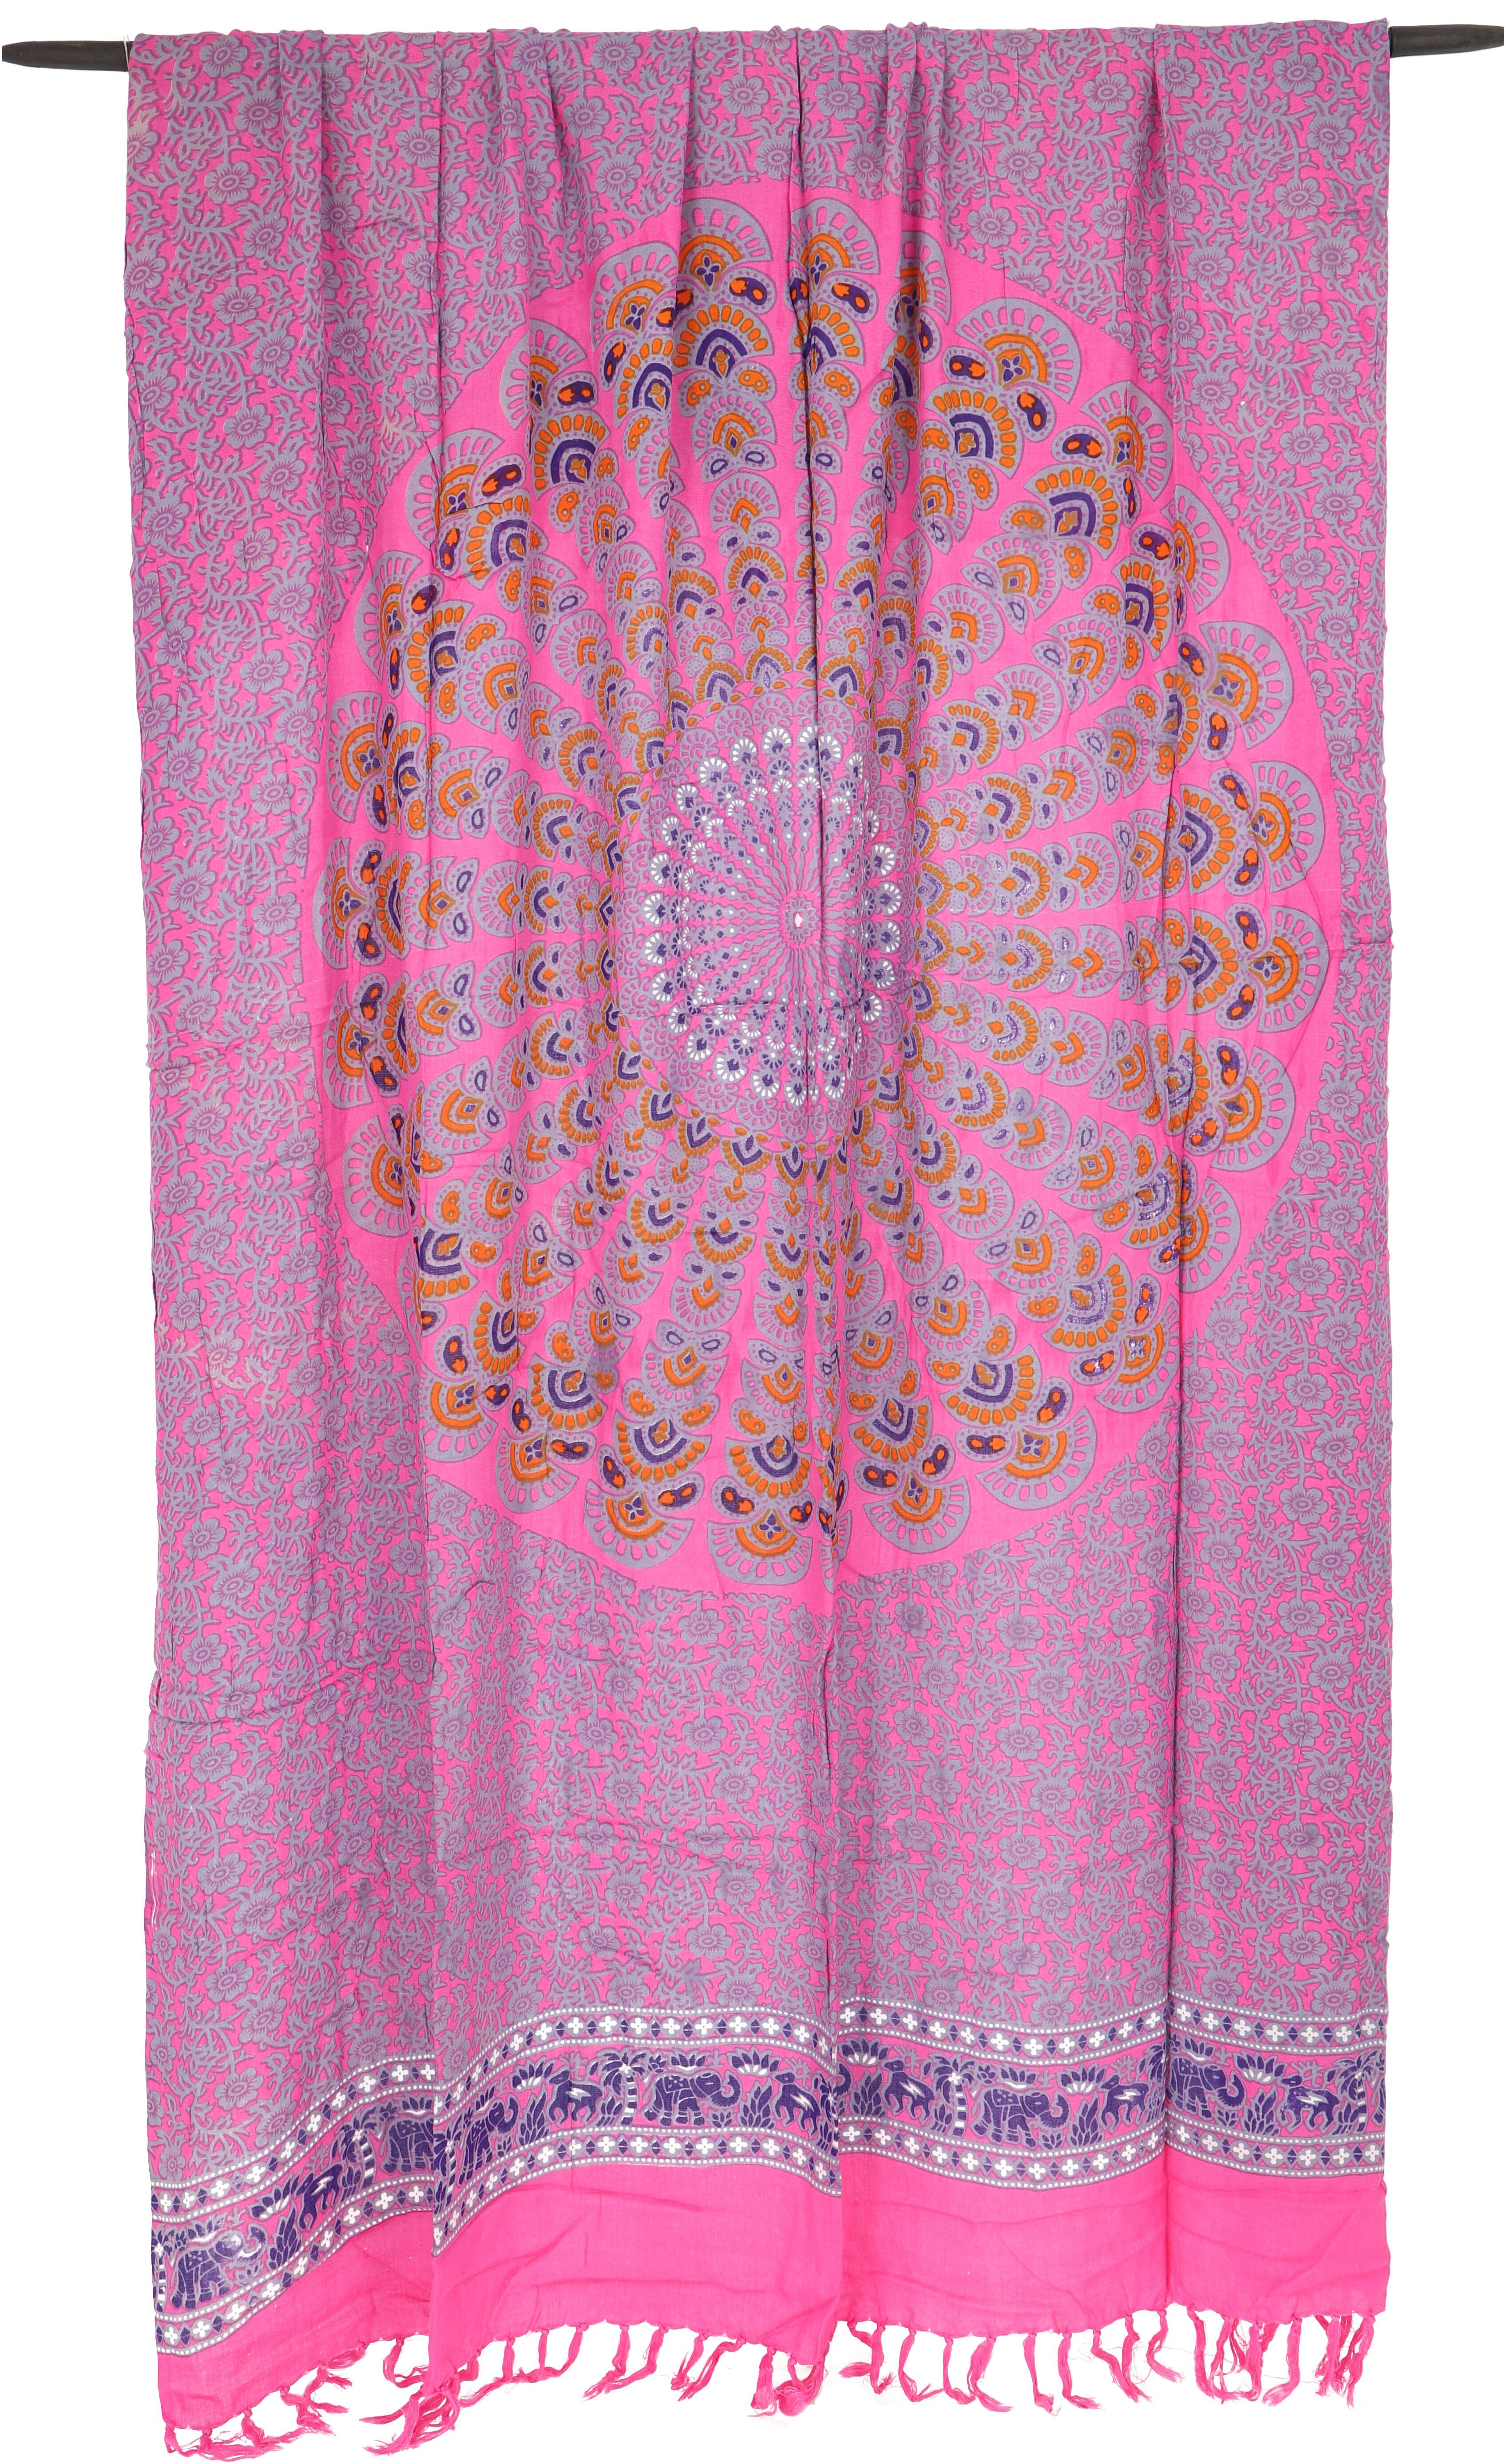 Guru-Shop Sarong Bali Sarong, Wickelrock, pink/grau Wandtuch, Mandala